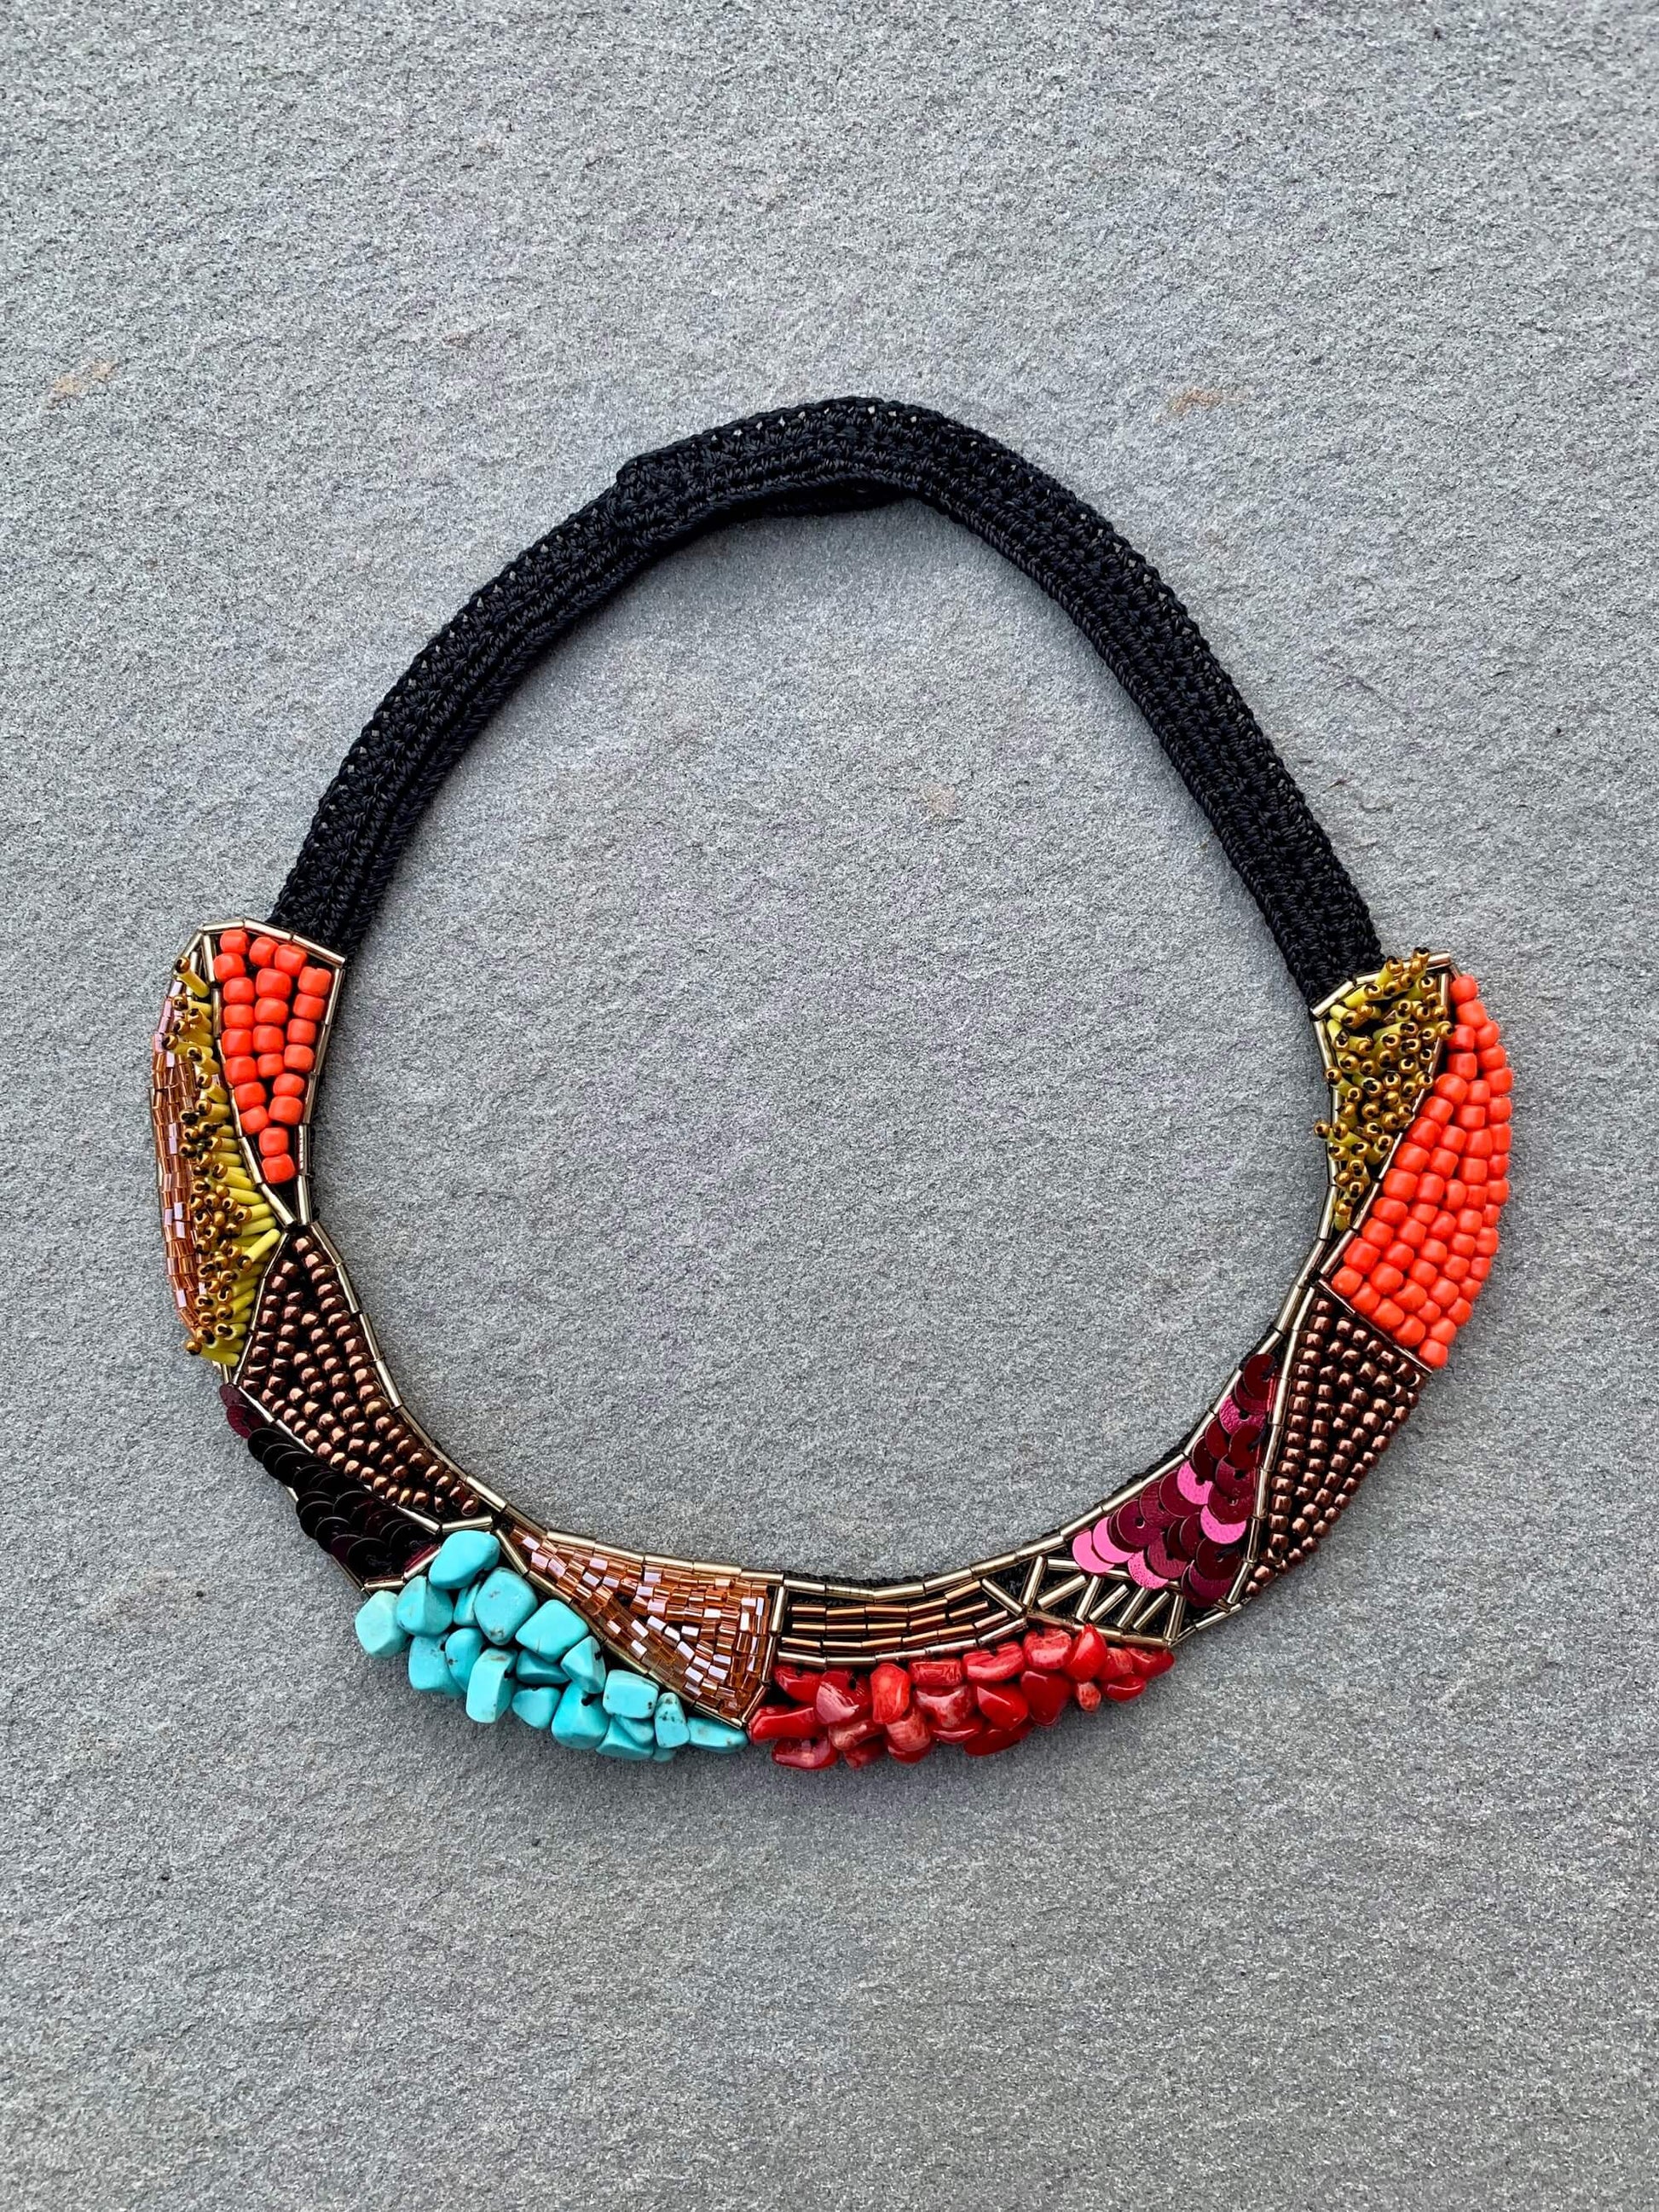 Bead Embroidery Handmade Keriman Necklace by Seyyah